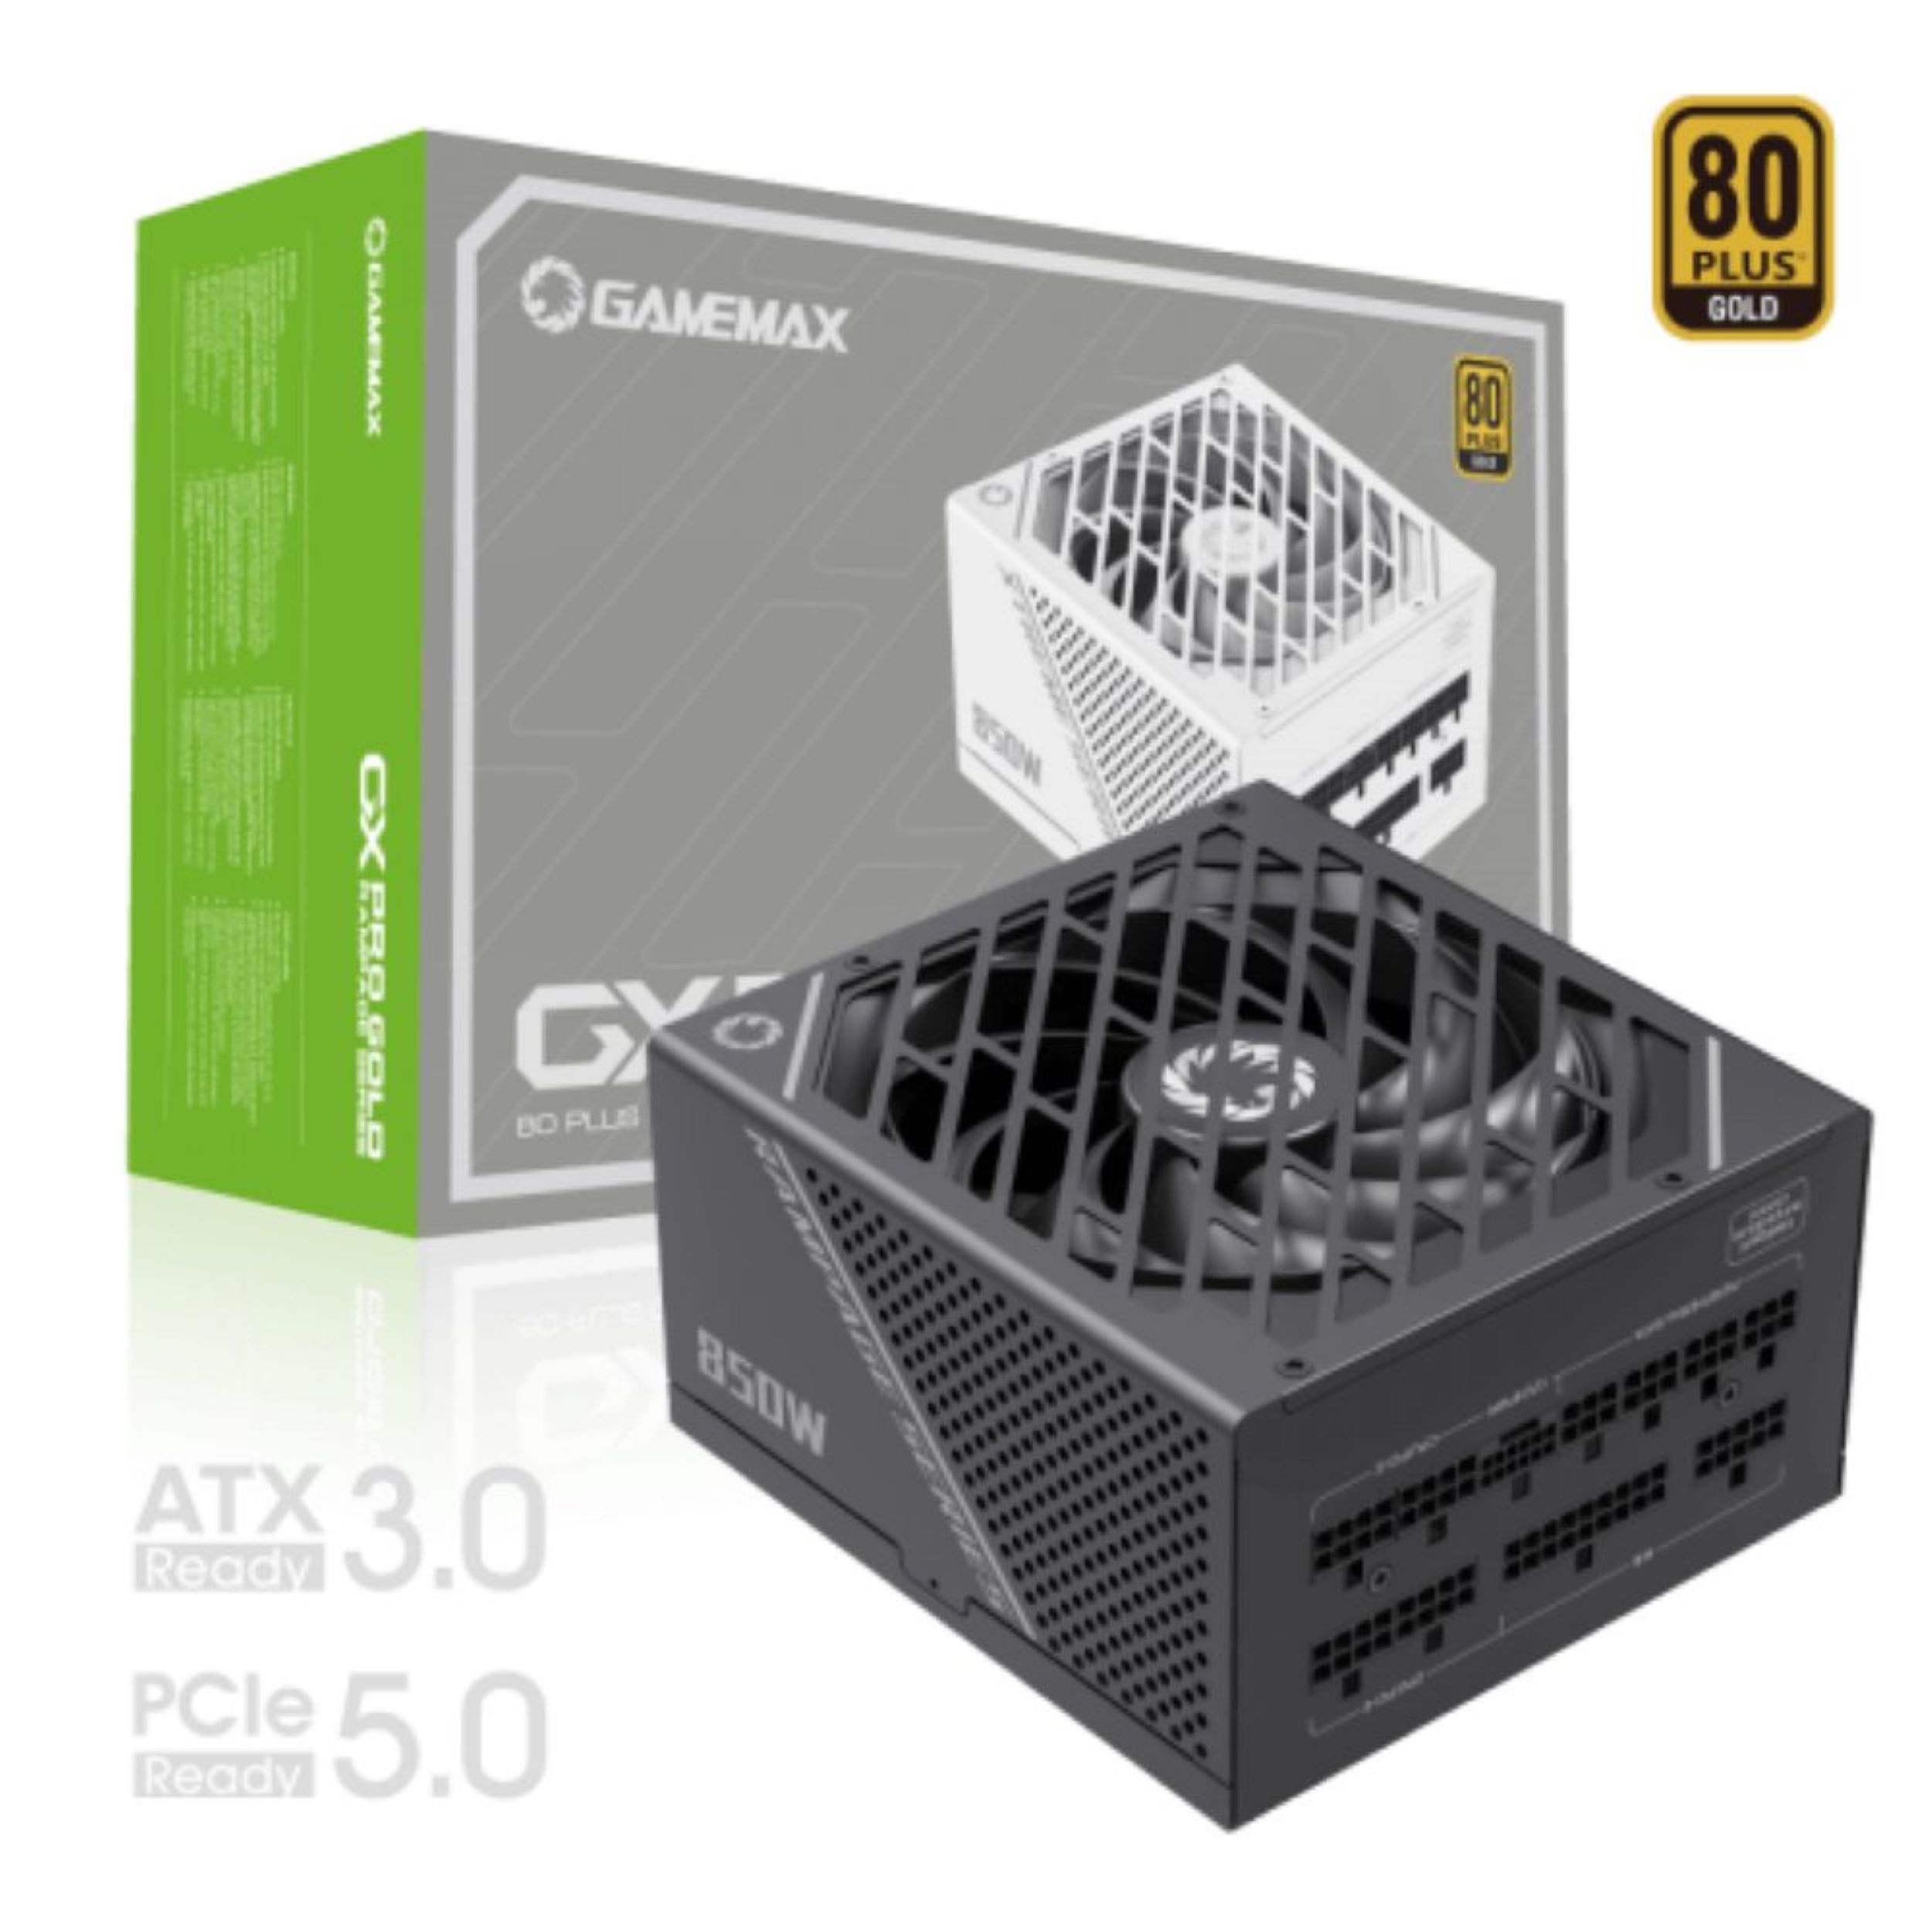 GAMEMAX GX-850 PRO BK (850W, Watt 850 ATX3.0, 80+ 5.0) PCIe Gold, Netzteil